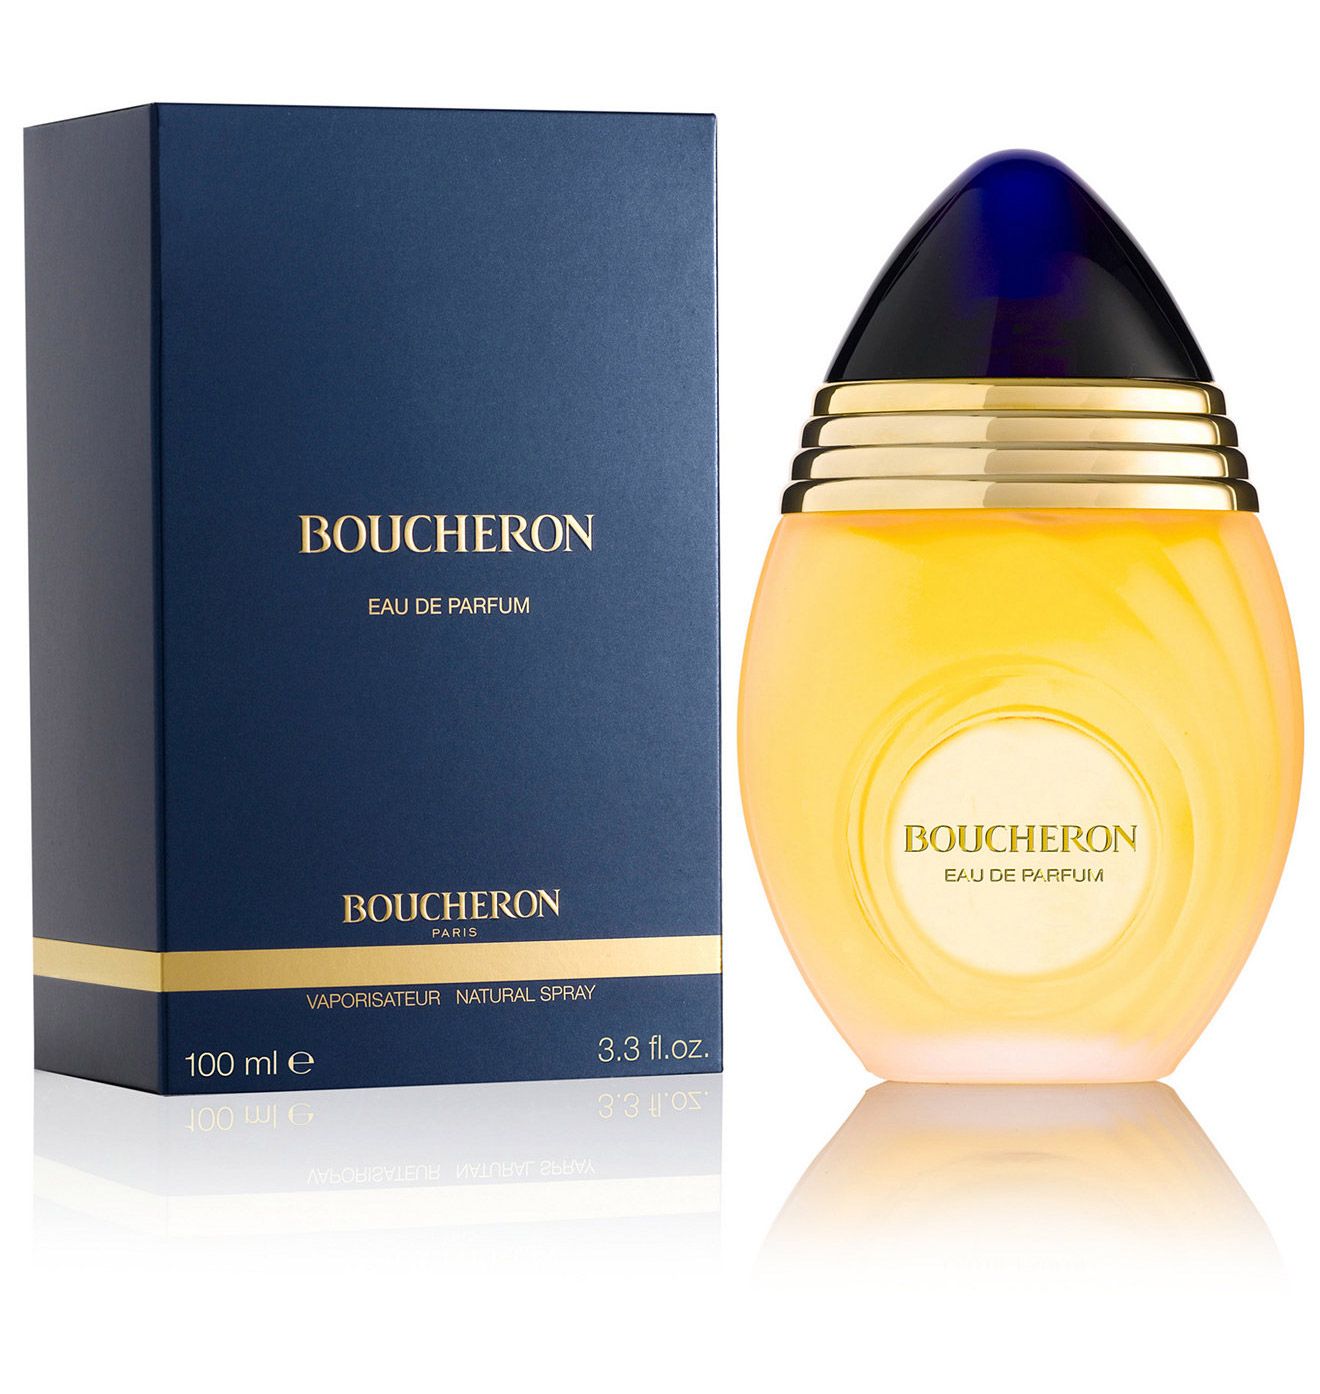 Piękne opakowanie Boucheron Eau de Parfum